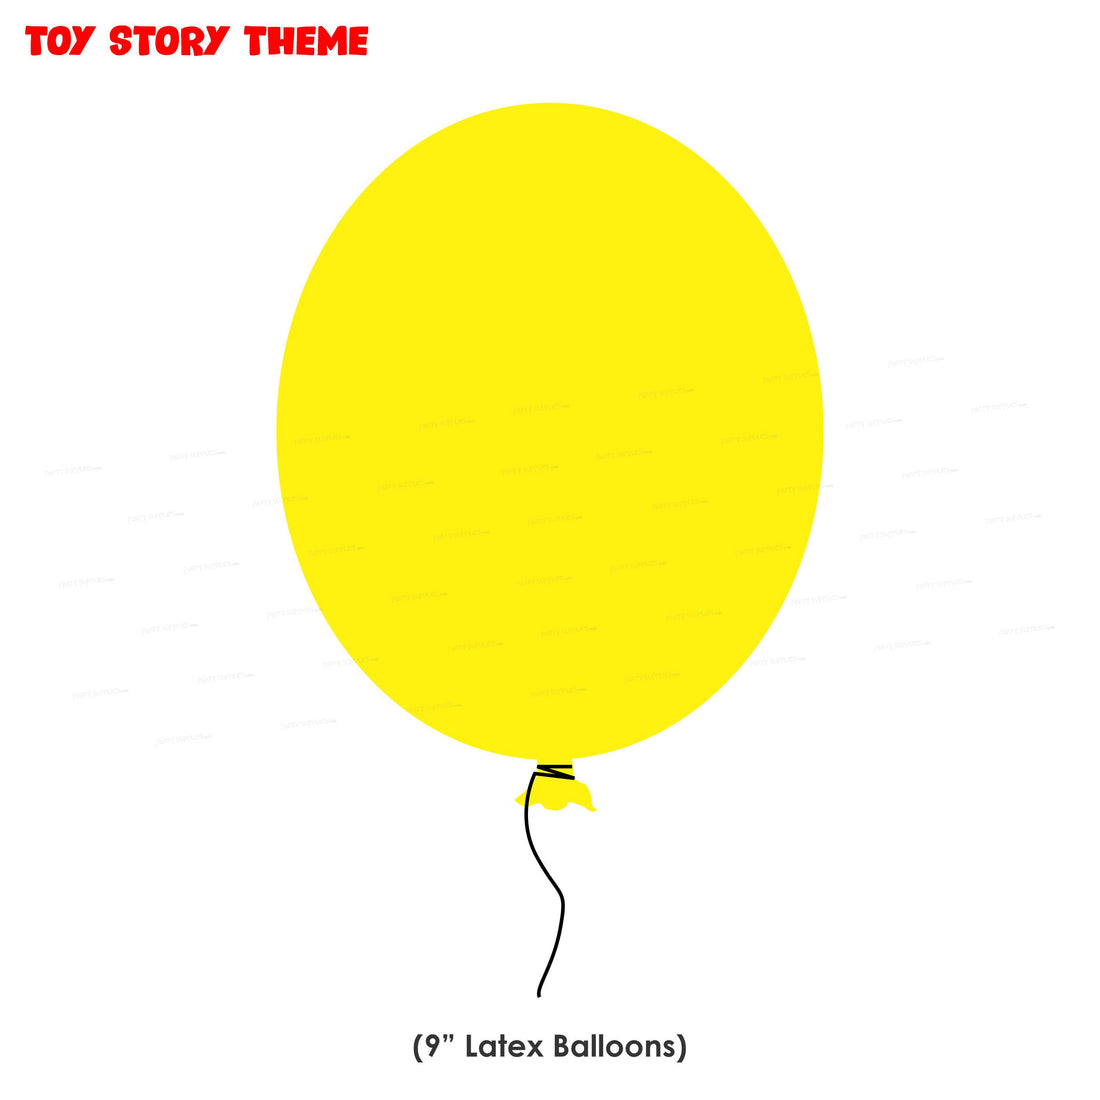 PSI Toy Story Theme Colour 60 Pcs Balloons